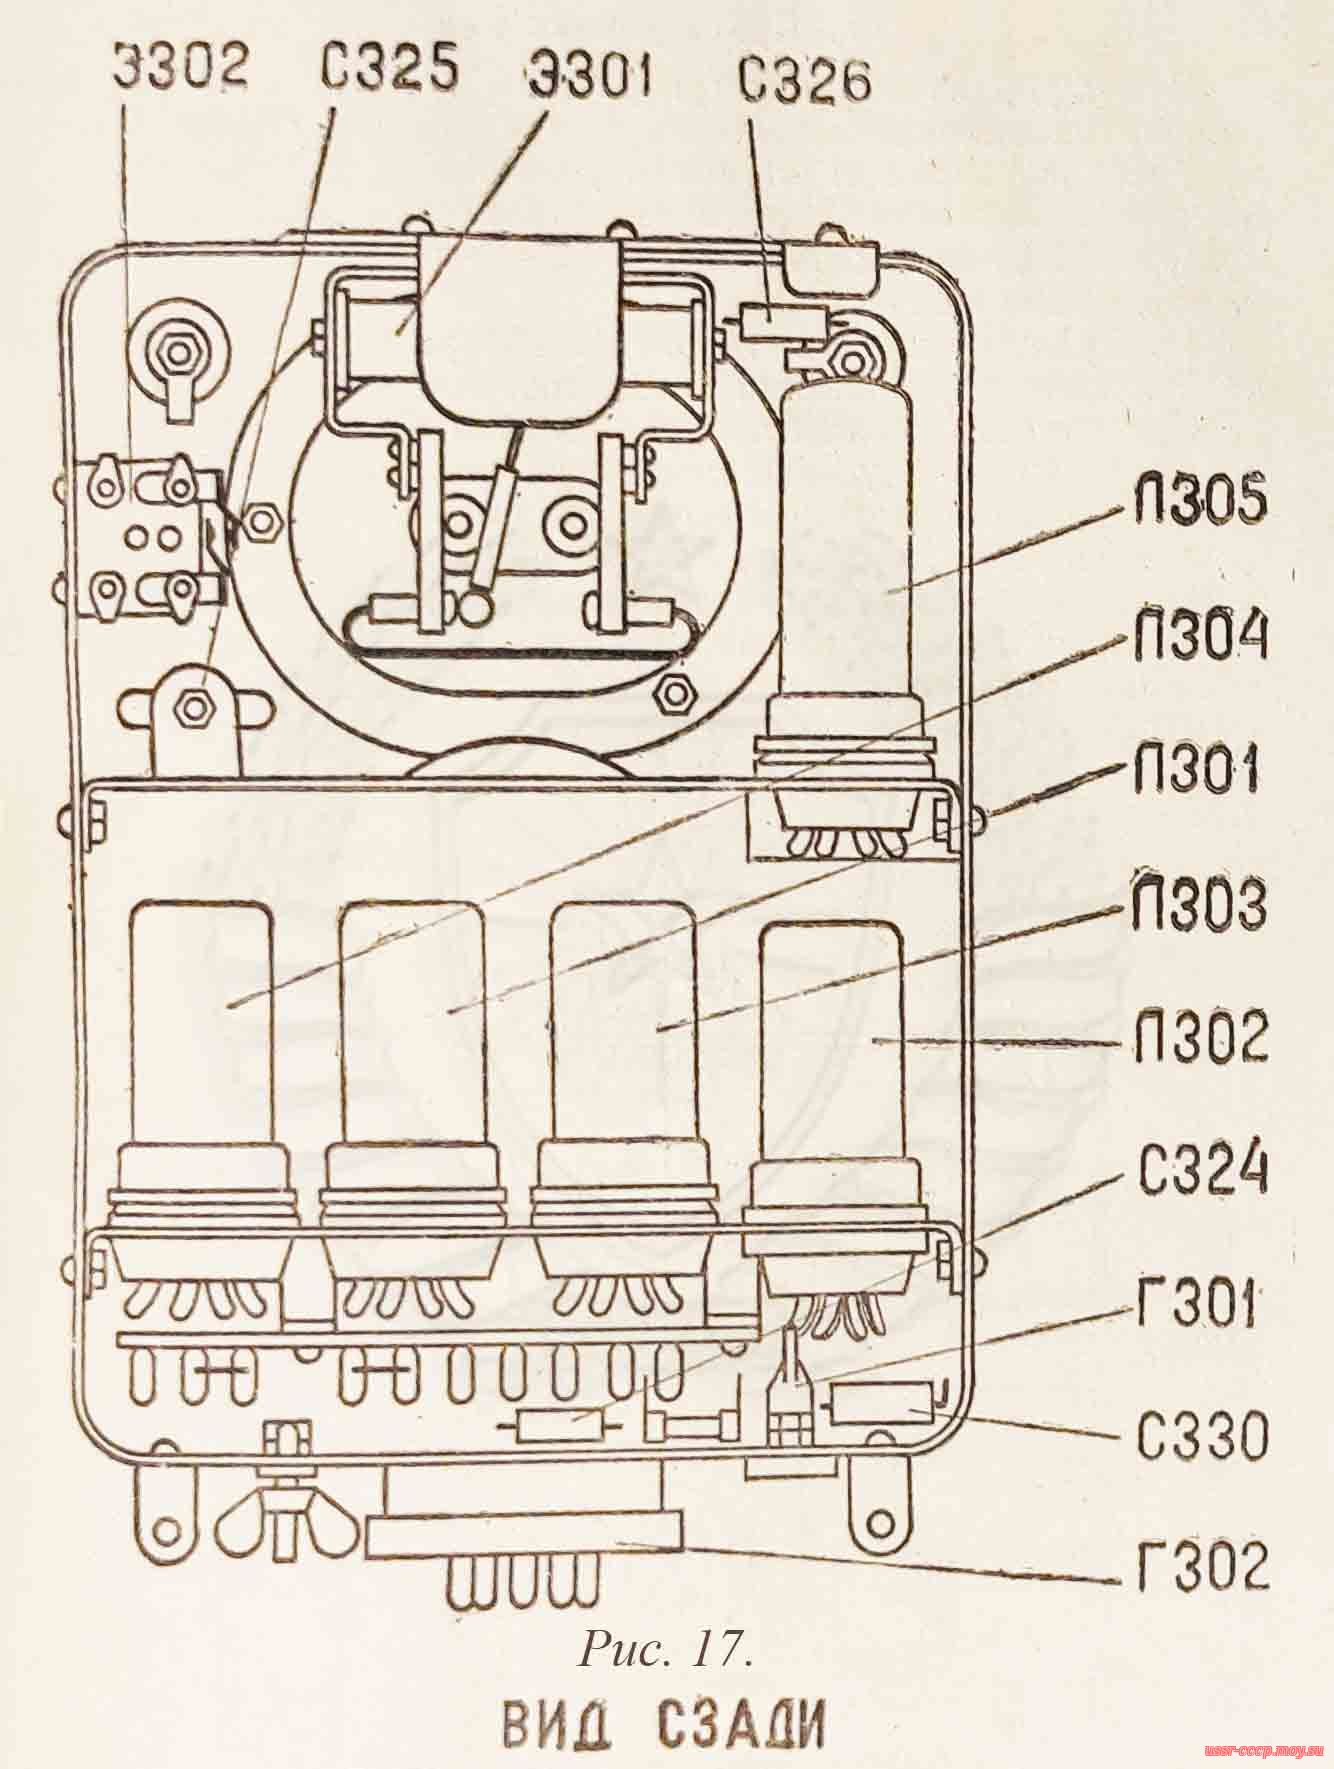 Рисунок 17. Антенный элемент (вид сзади), радиопередатчика Р-805.